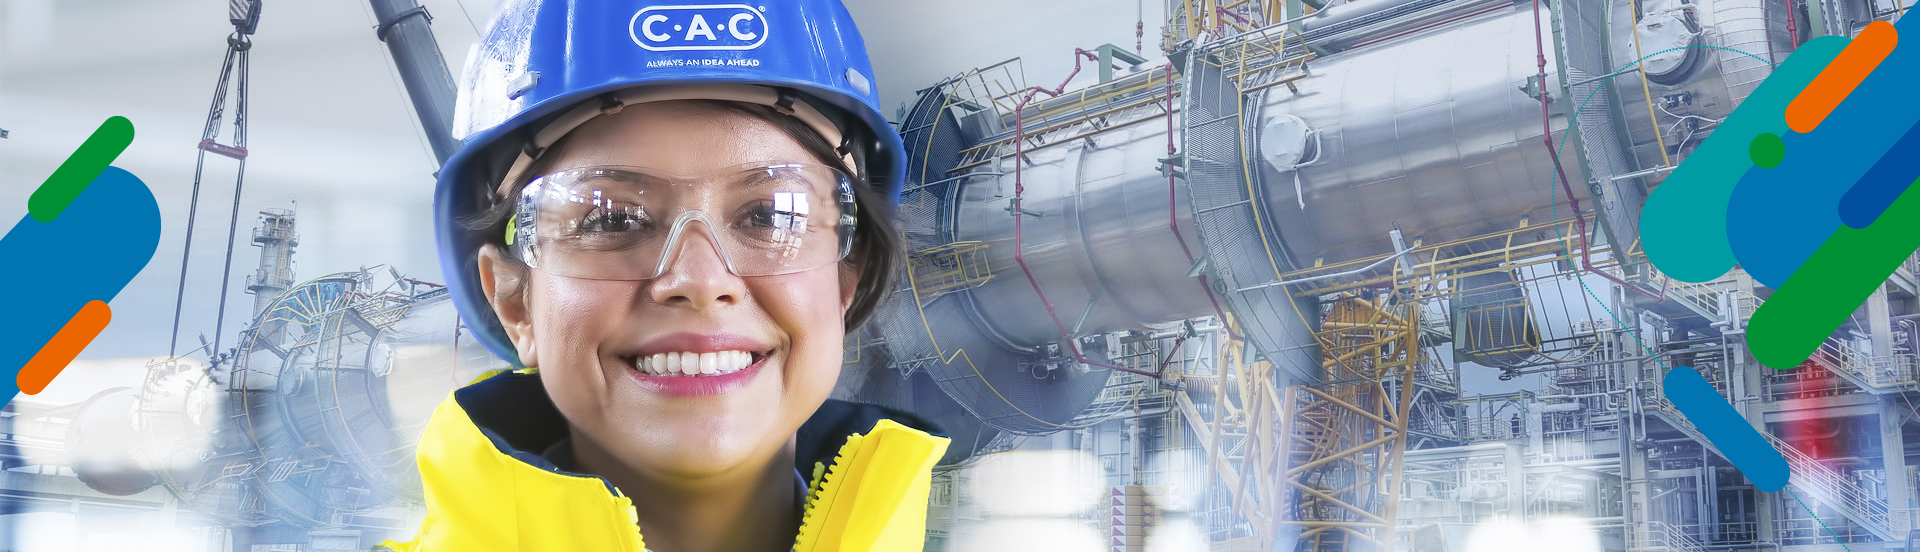 CAC Mitarbeiterin mit Arbeitsschutzkleidung vor Chemieanlage